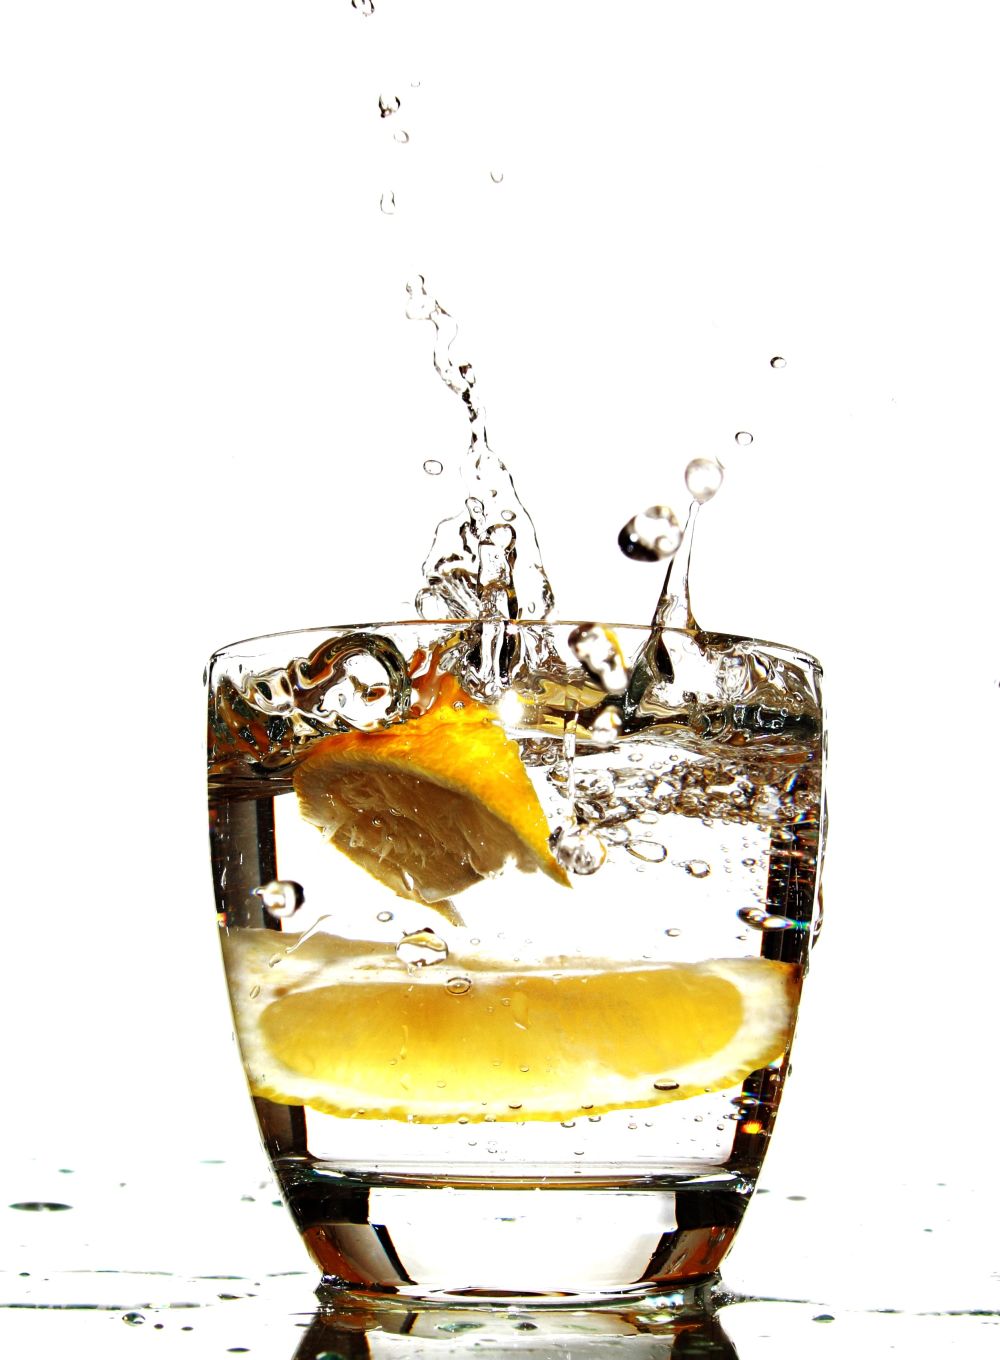 最好的解渴饮料就是白开水（或者可选择加柠檬片），保证健康又不会对身体造成负担。